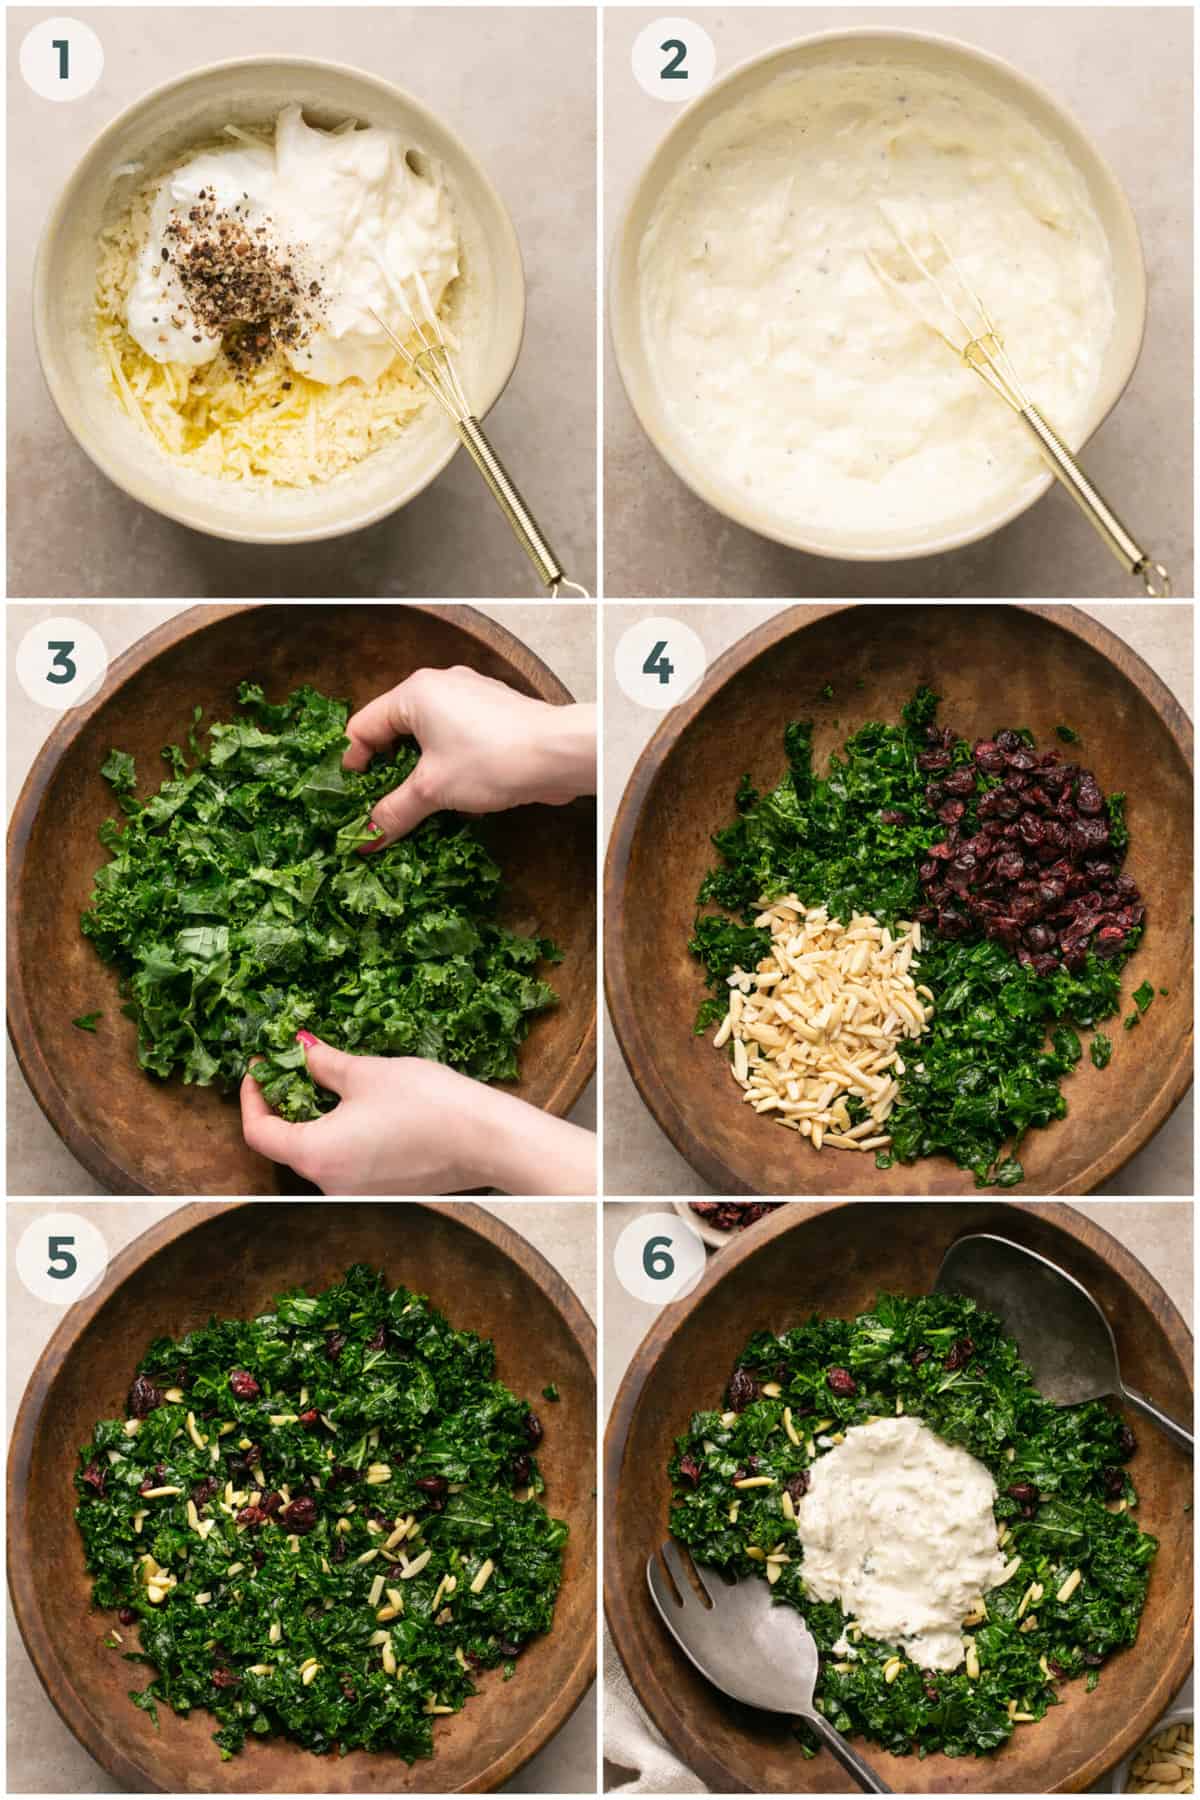 six steps of preparing kale salad